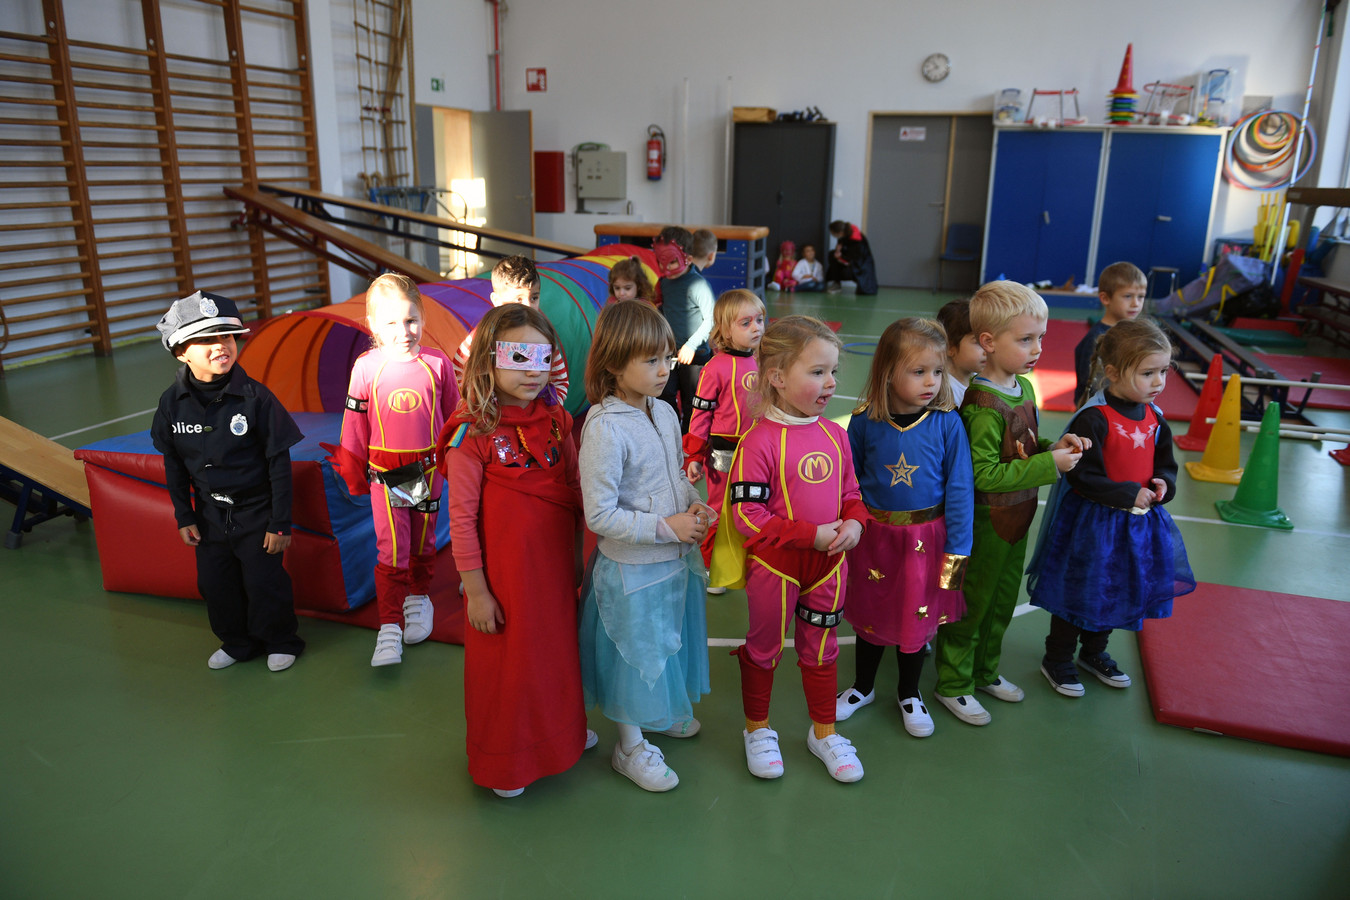 Rode Neuzen in gemeenteschool De Boemerang in Meerbeek: alle kinderen als superheld verkleed naar school.